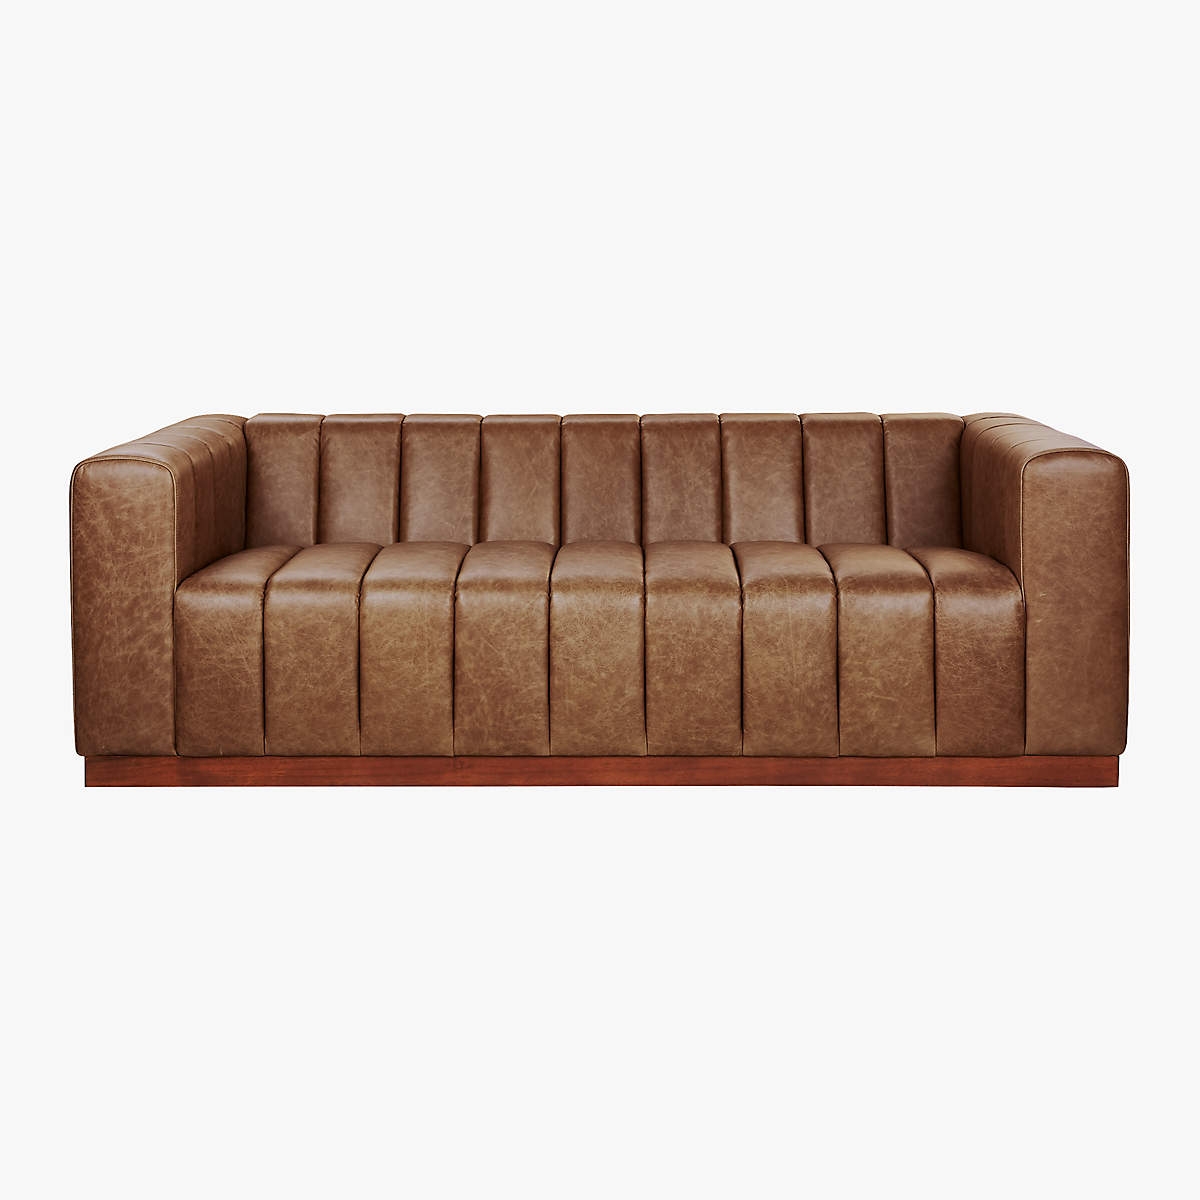 Forte 81" Channeled Saddle Leather Sofa with Walnut Base - Image 0